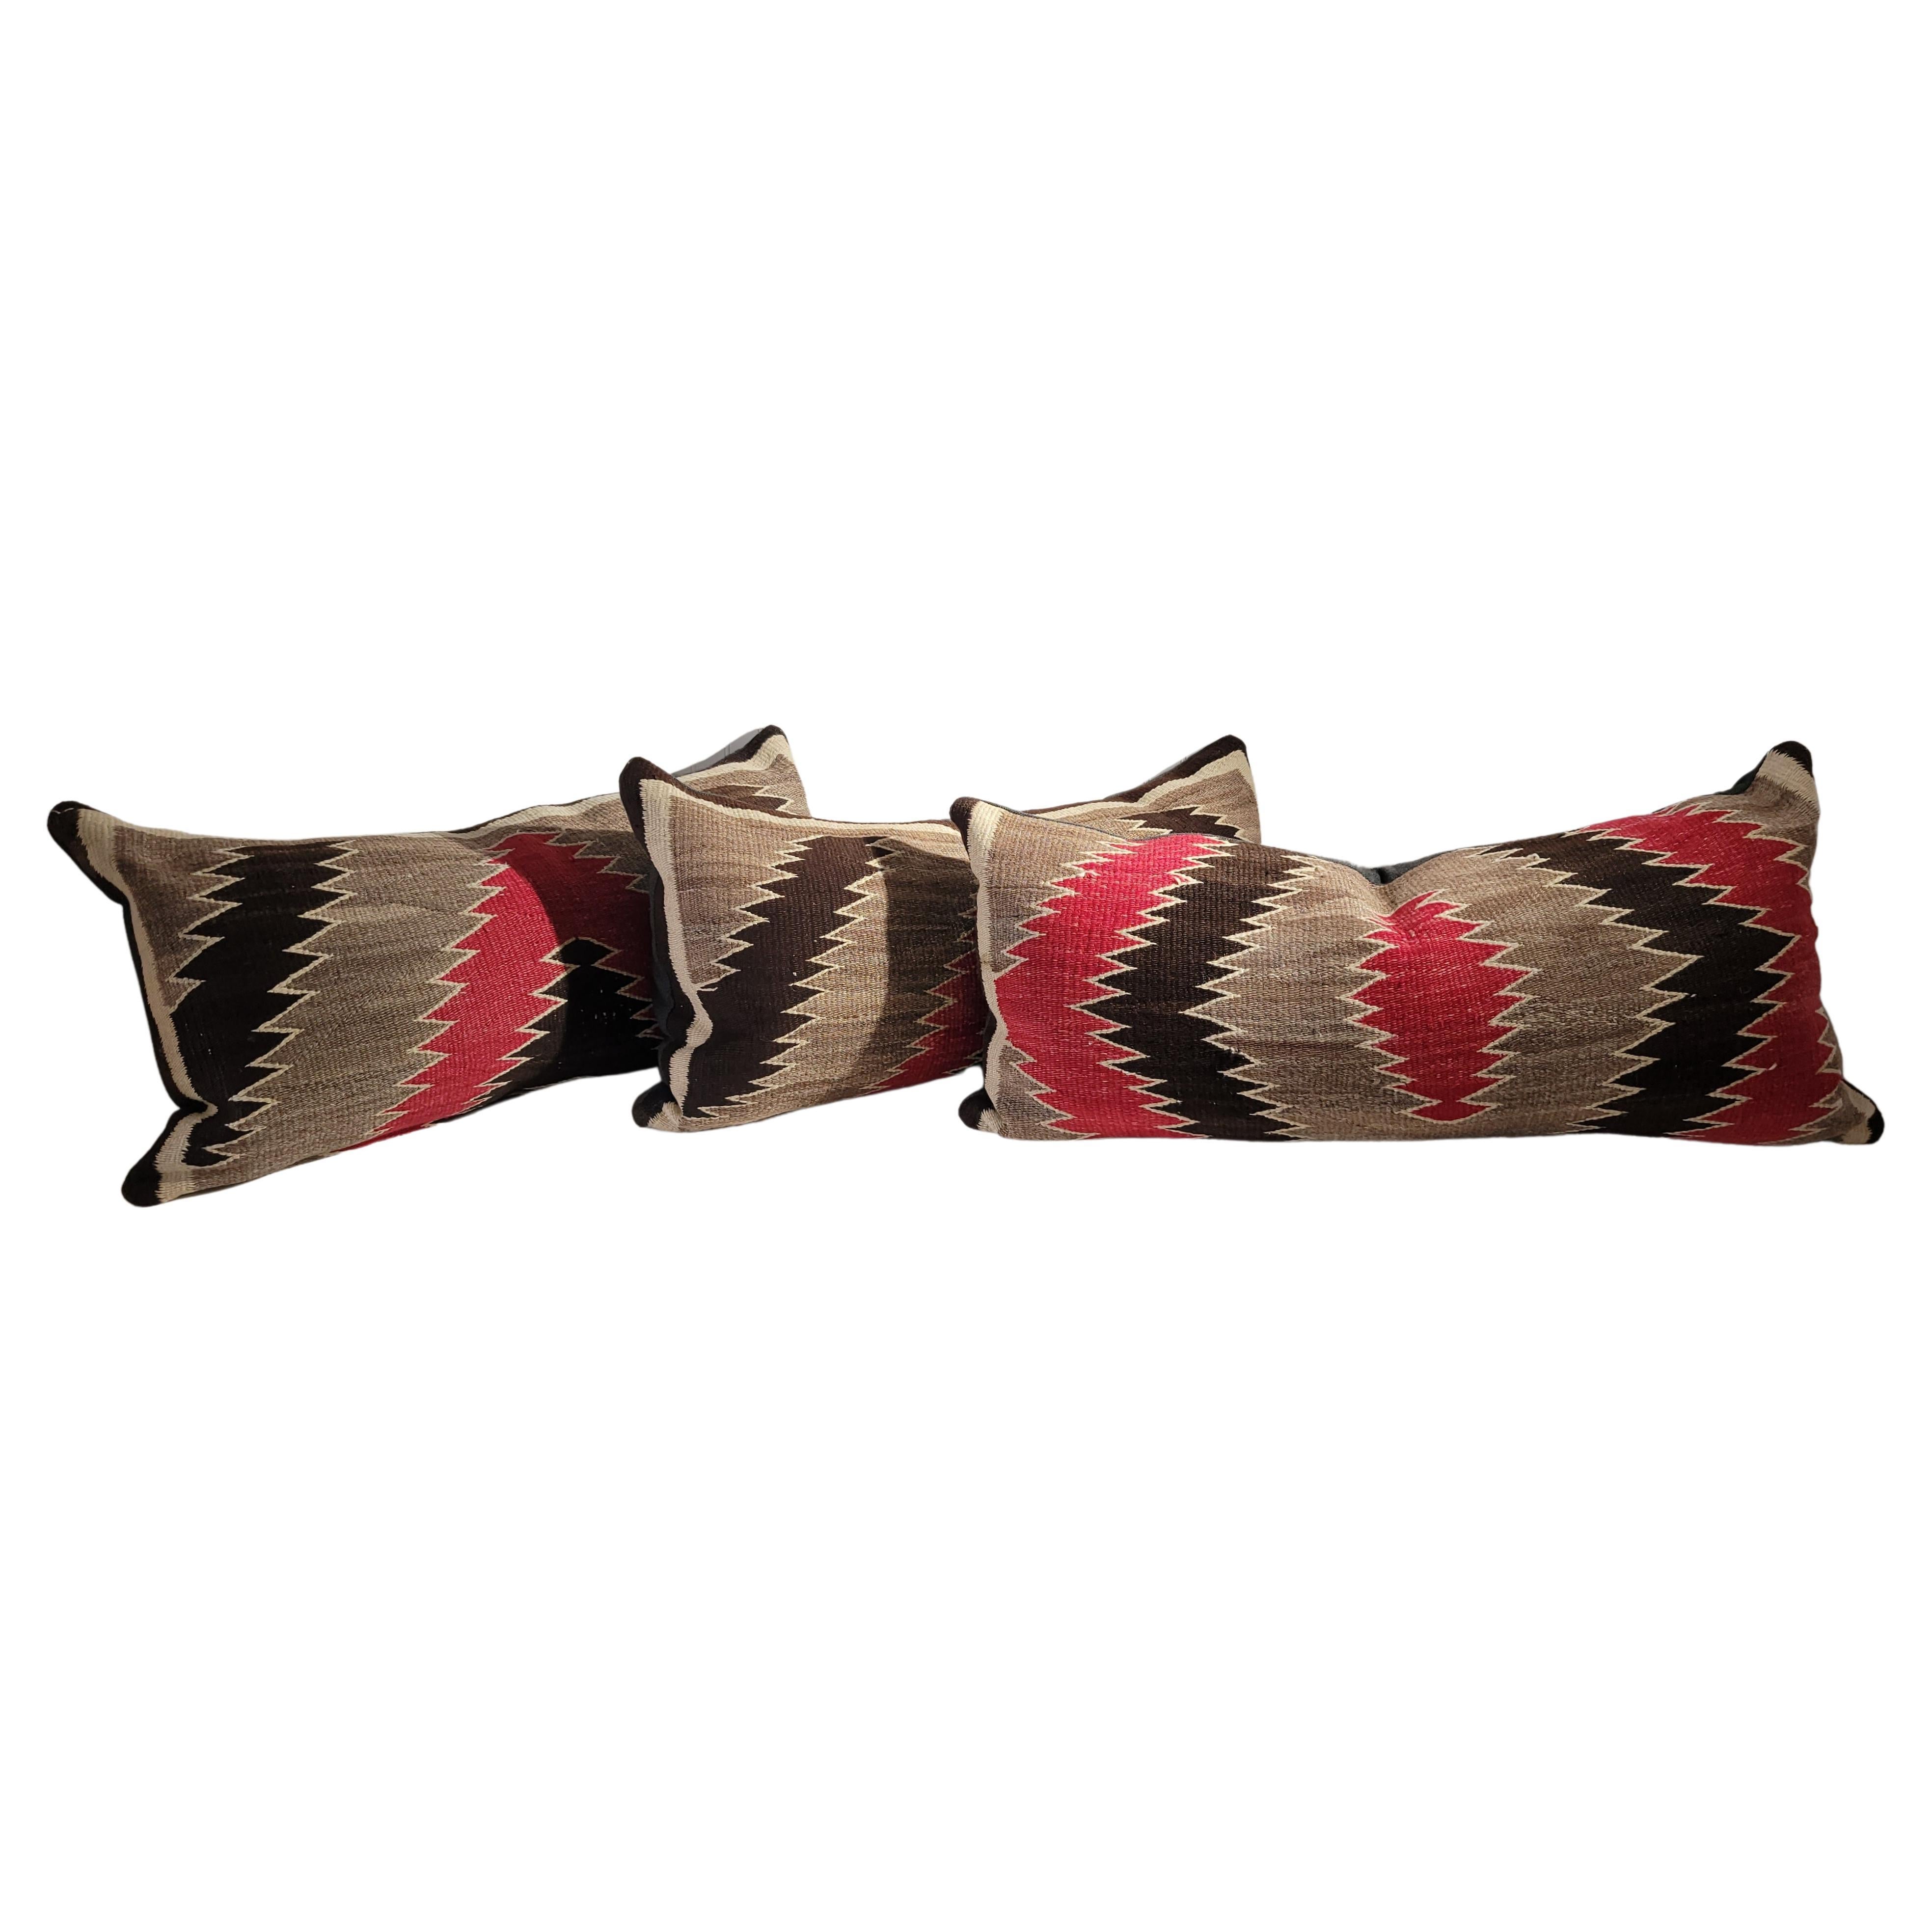 Coussins en laine indienne Navajo avec dos en lin. Inserts en duvet et plumes faits sur mesure. 

Cet ensemble de trois coussins à motifs Navajo a été réalisé à partir d'un seul tissage. Fabriqué professionnellement avec des matériaux de la plus